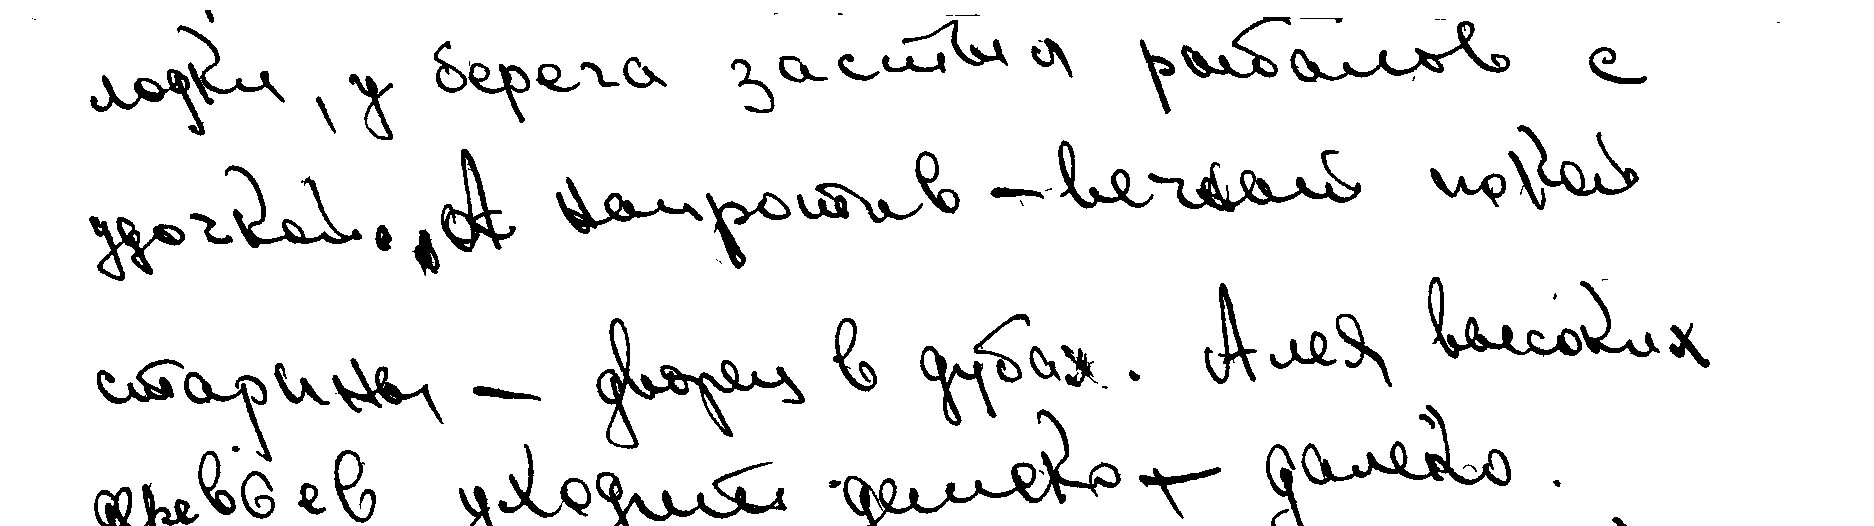 Сильный наклон влево почерк. Сильный наклон вправо почерк. Подяерк с никлоеом в лево. Наклон почерка в левую сторону.